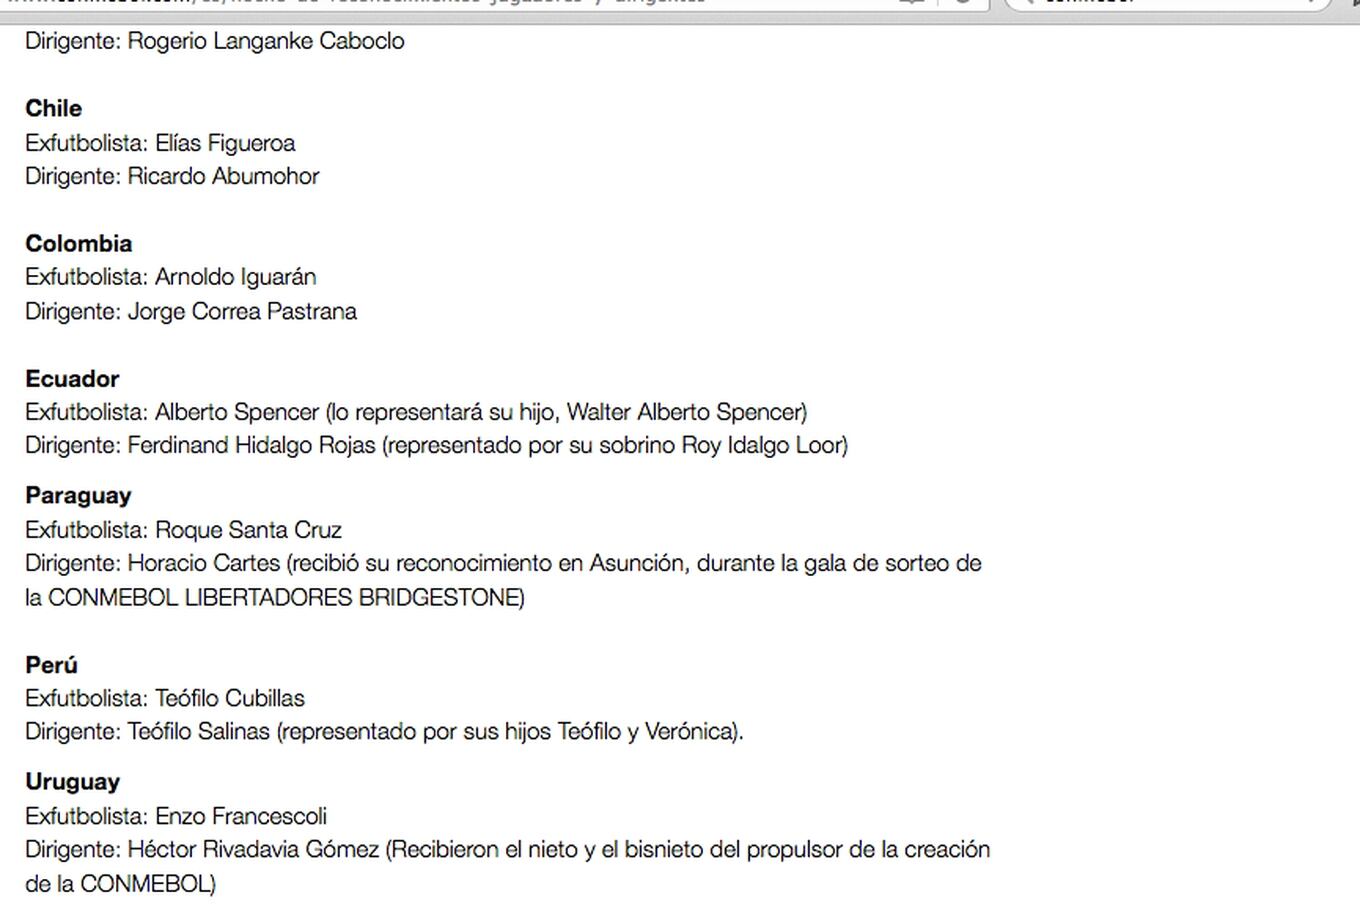 Por Paraguay aparece Roque Santa Cruz en la lista de exjugadores homenajeados.